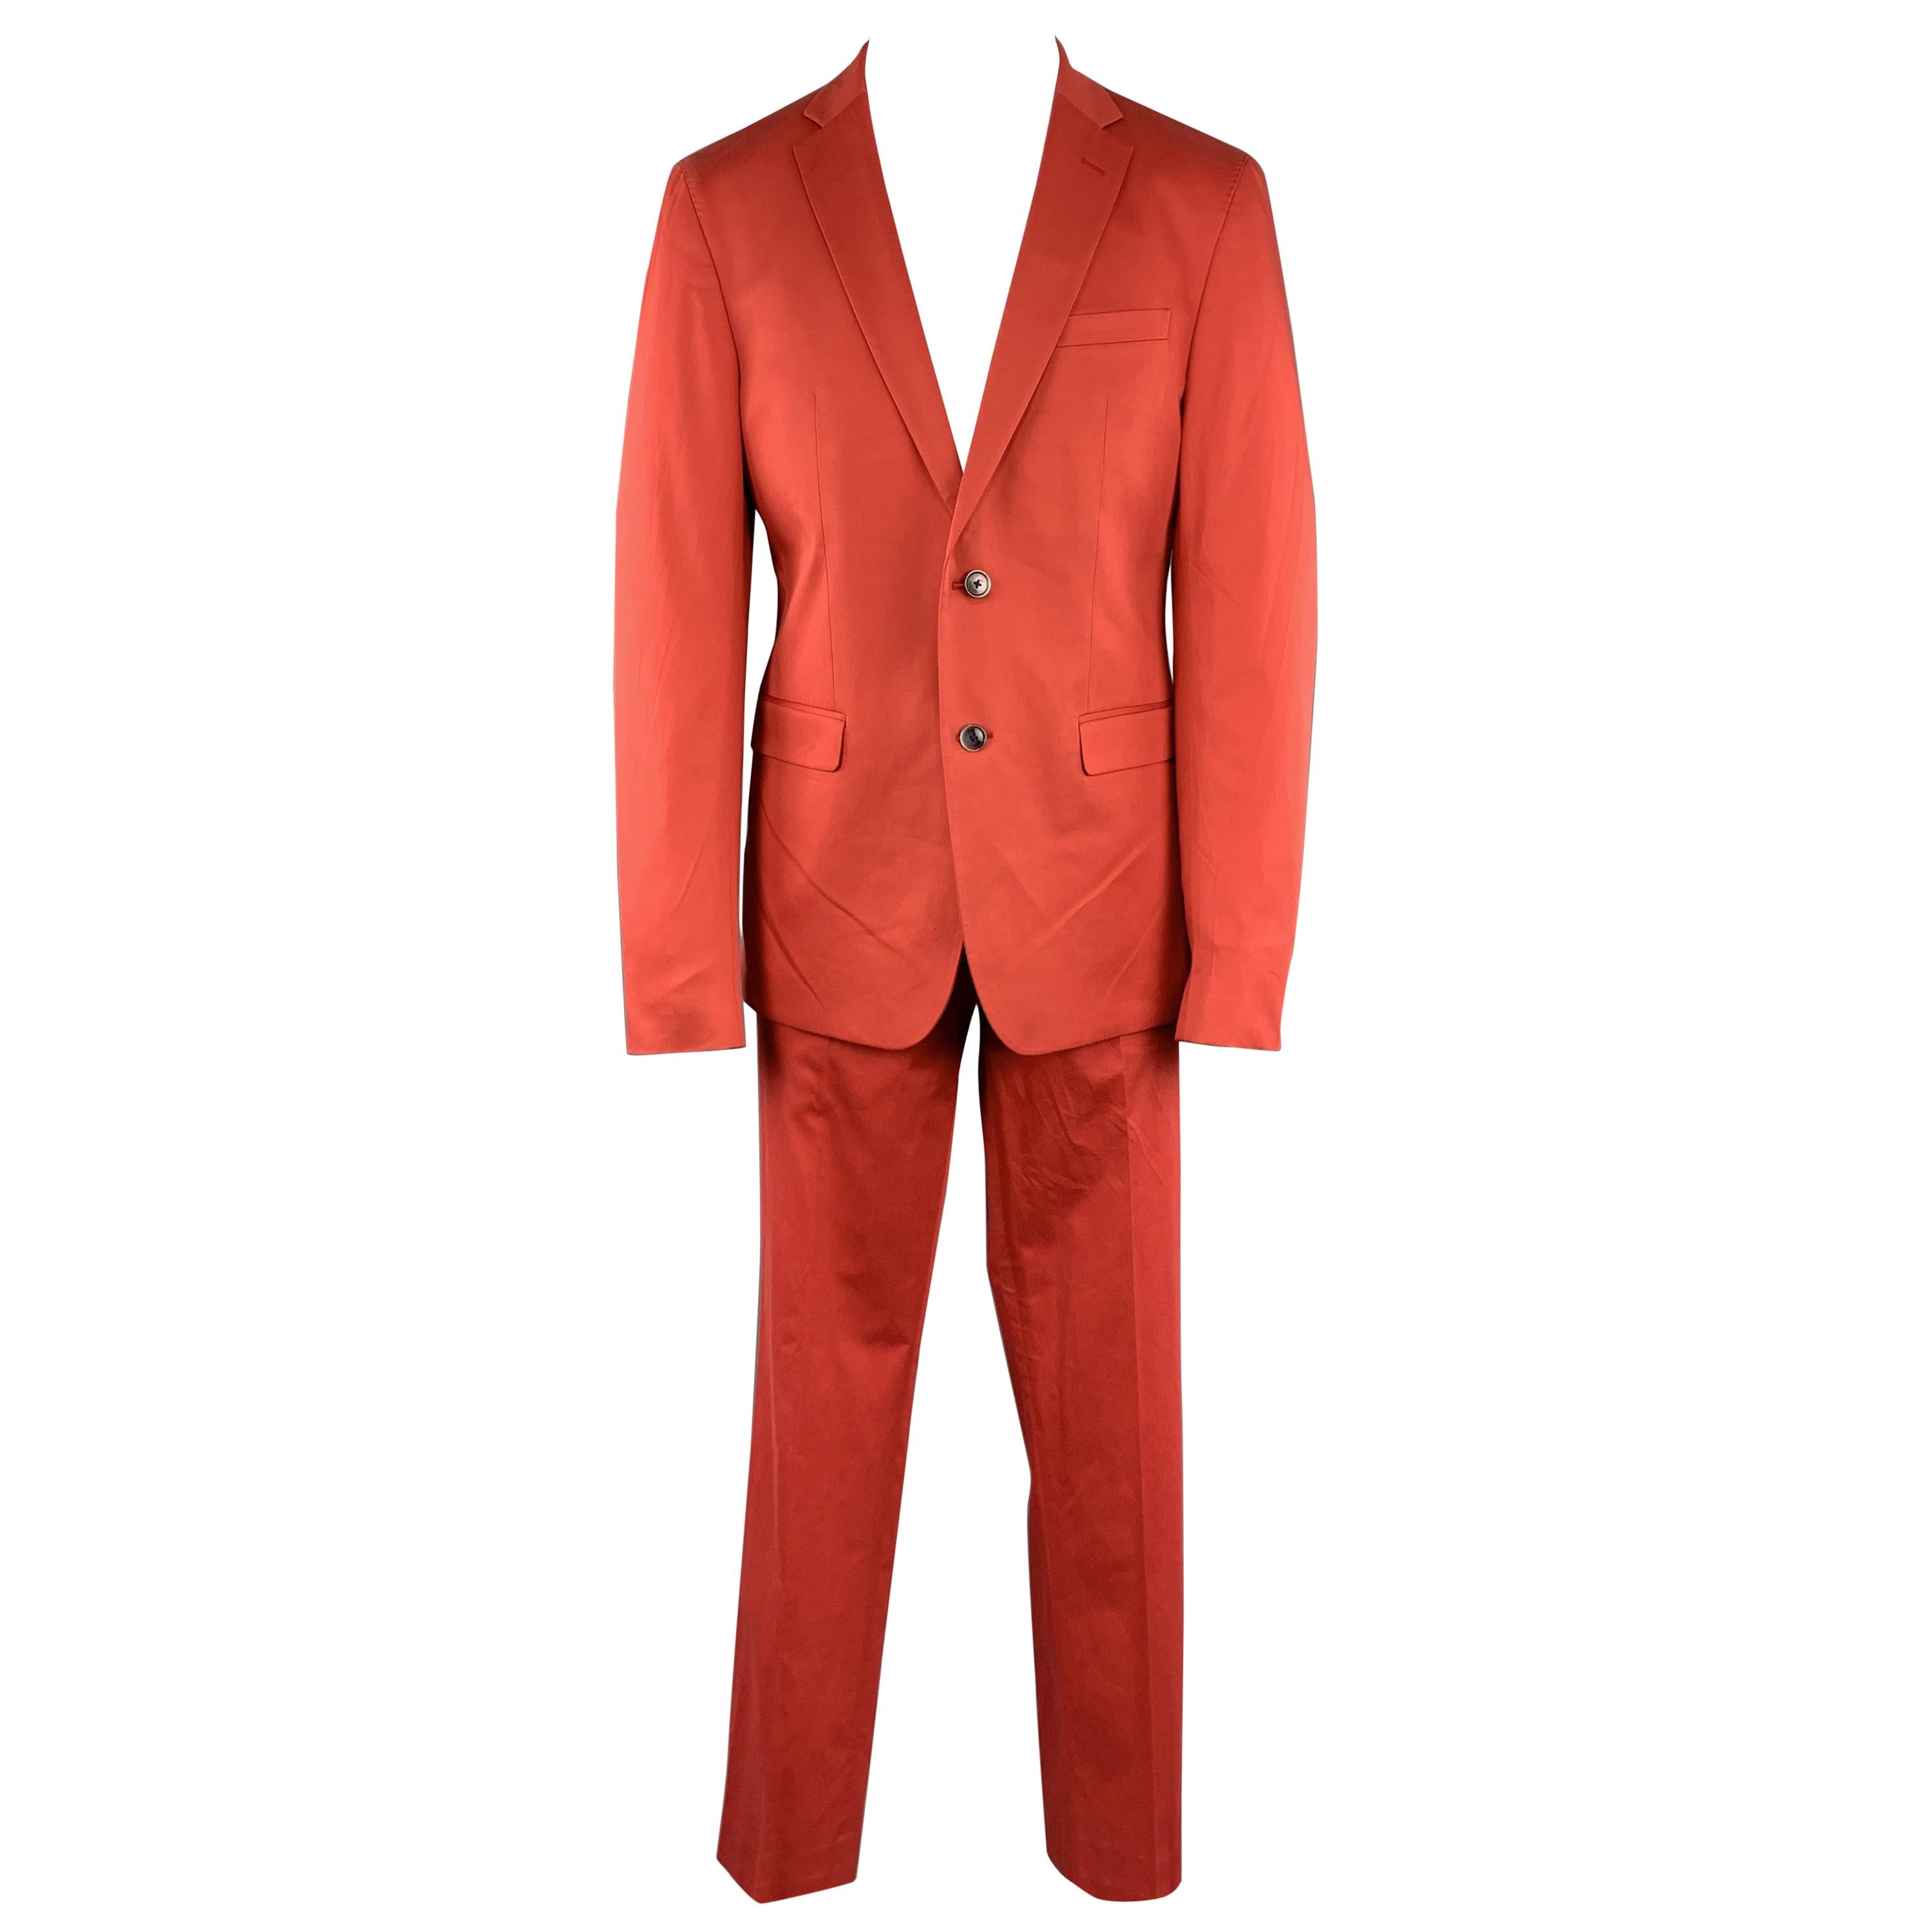 SAND Size 44 Coral Solid Cotton Blend Notch Lapel 36 x 32 Suit